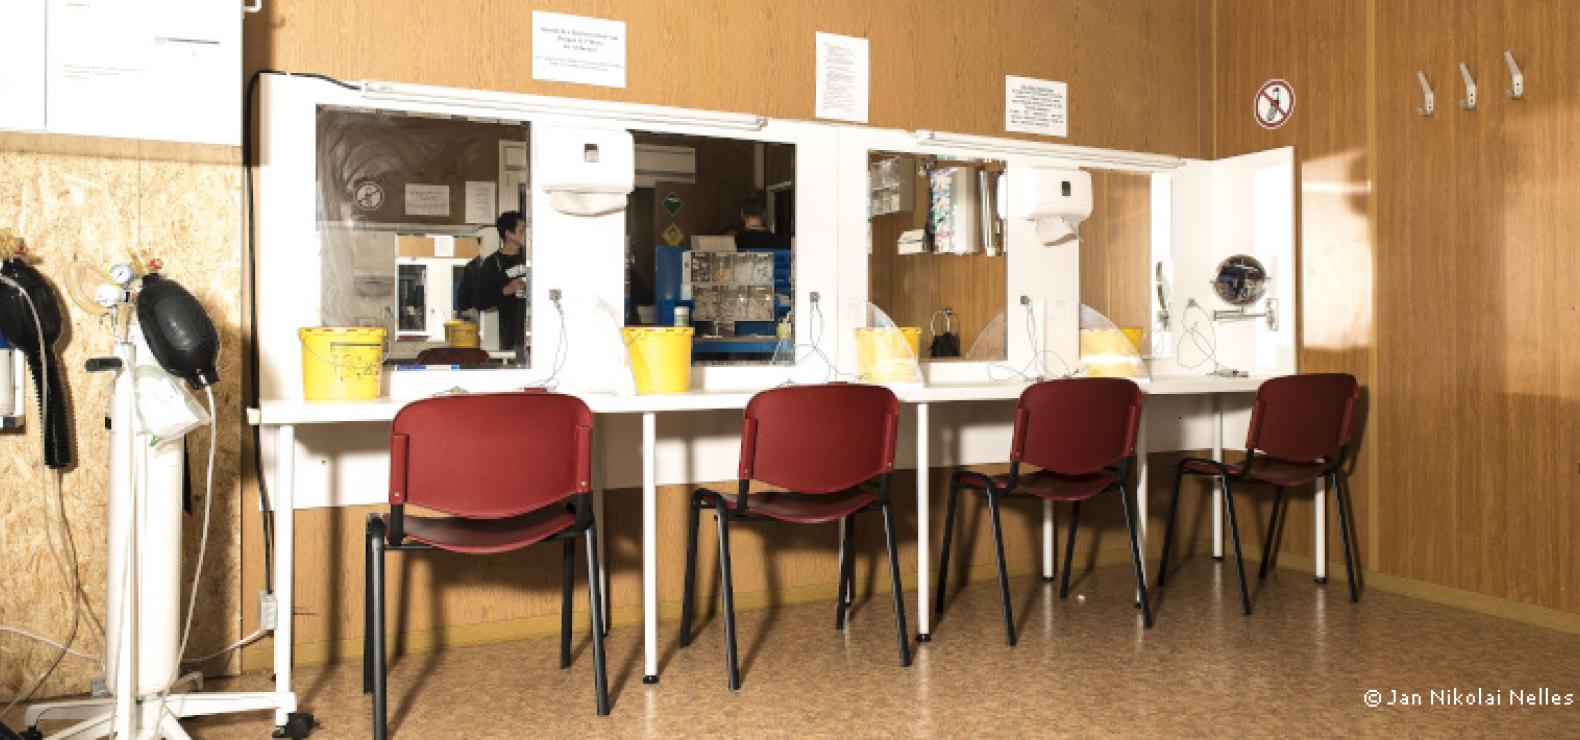 Drogenkonsumraum: Stühle stehen vor einer Wand mit Spiegeln und Tischen